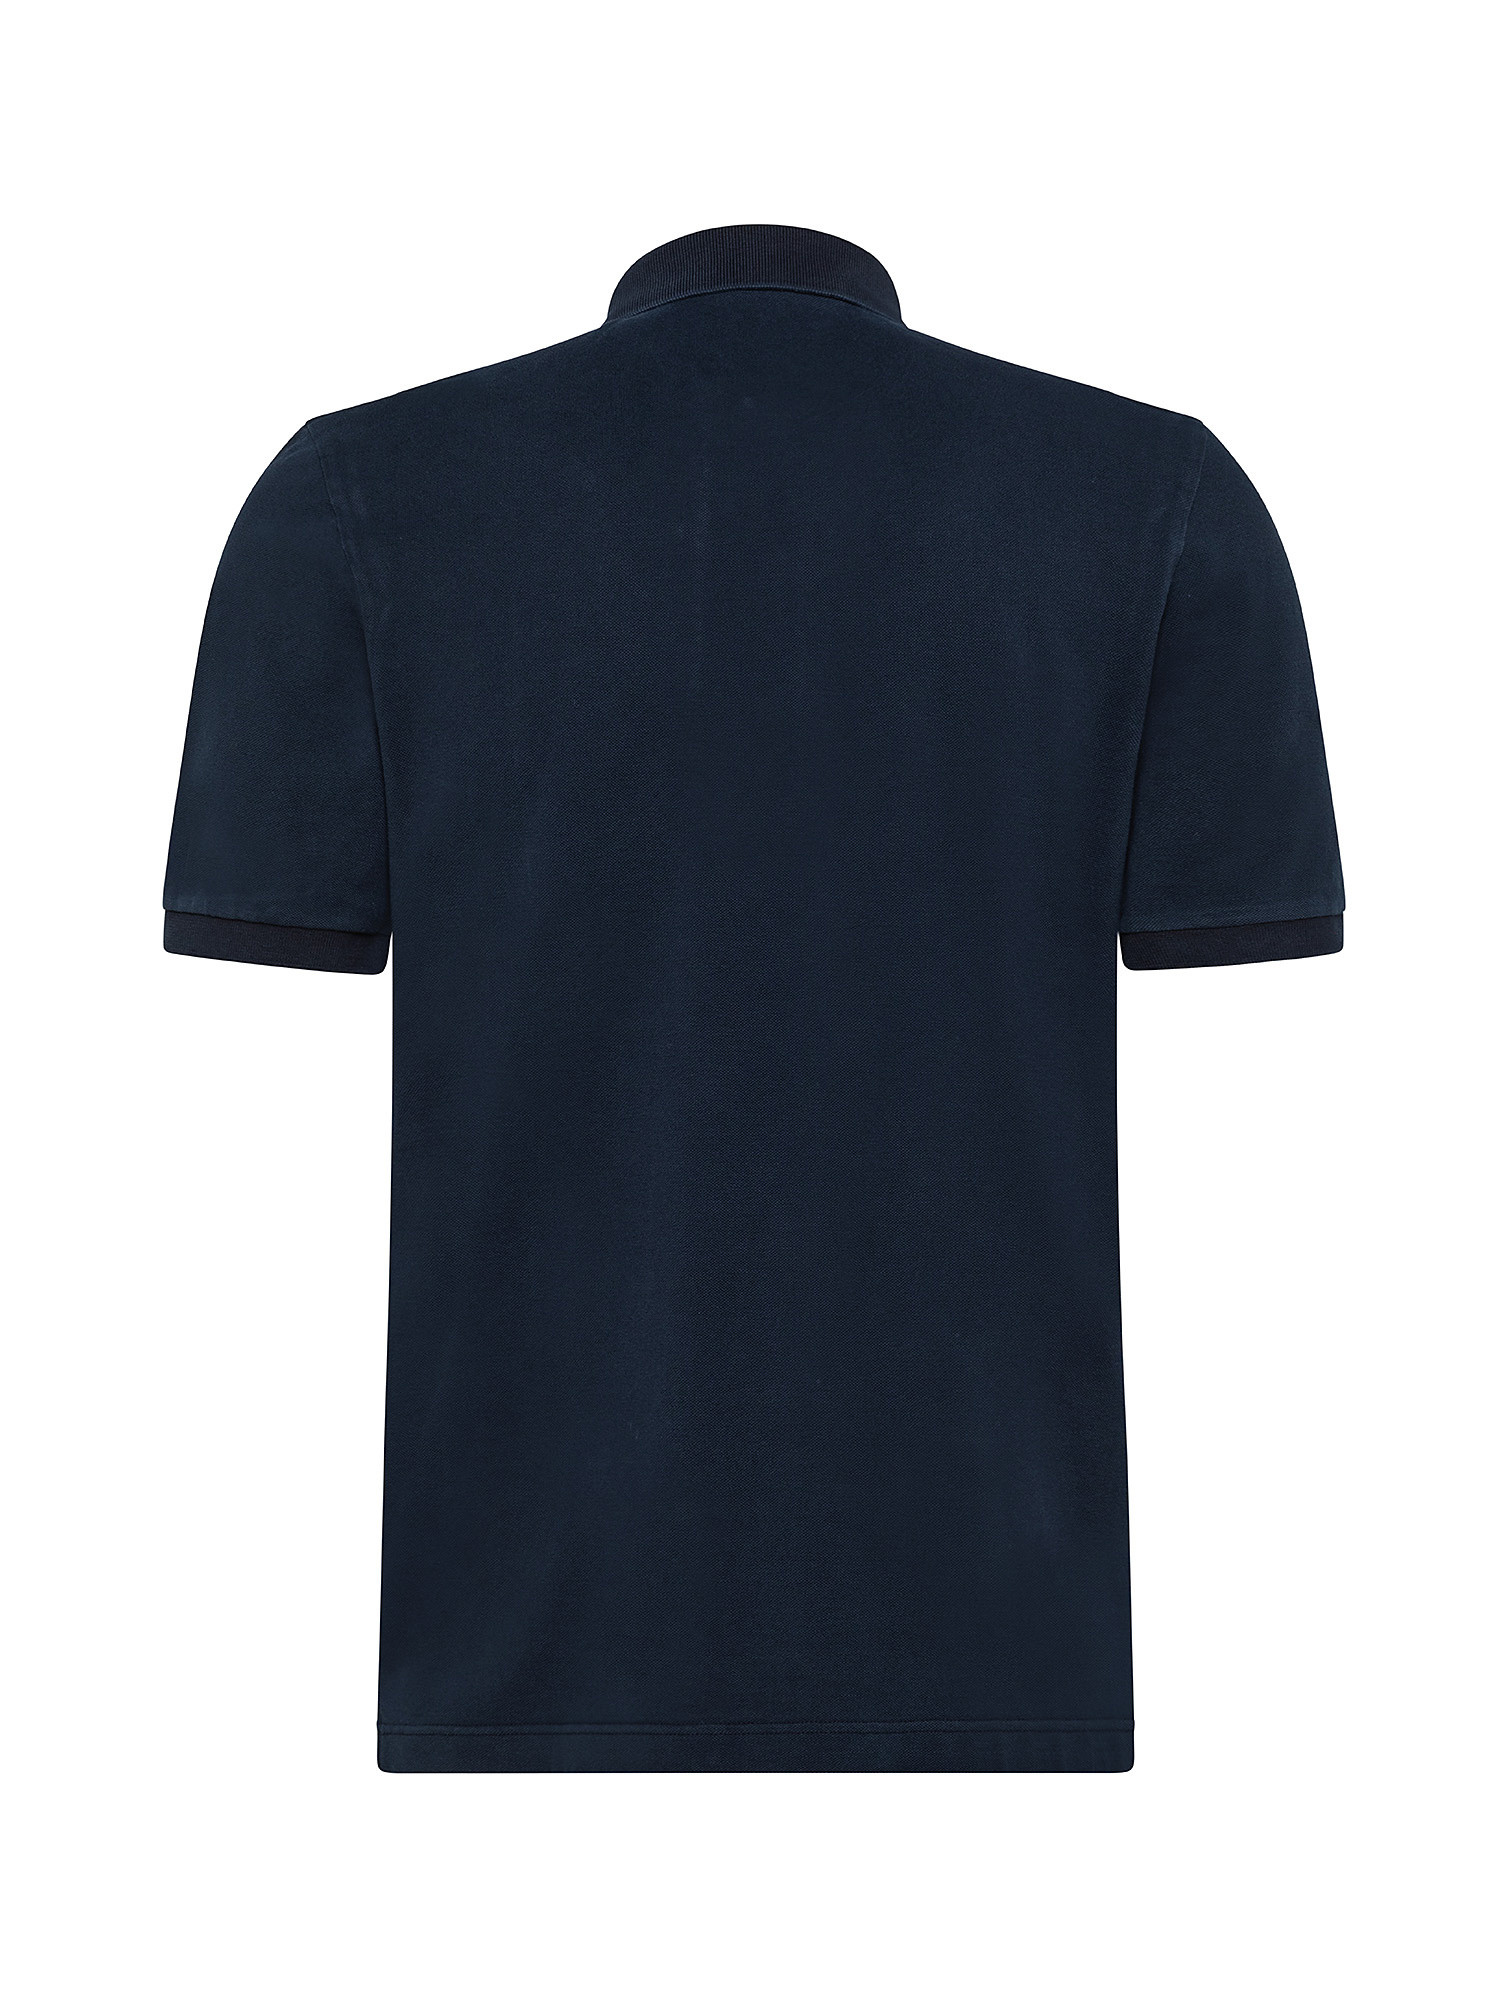 Vintage effect short sleeve polo shirt, Dark Blue, large image number 1